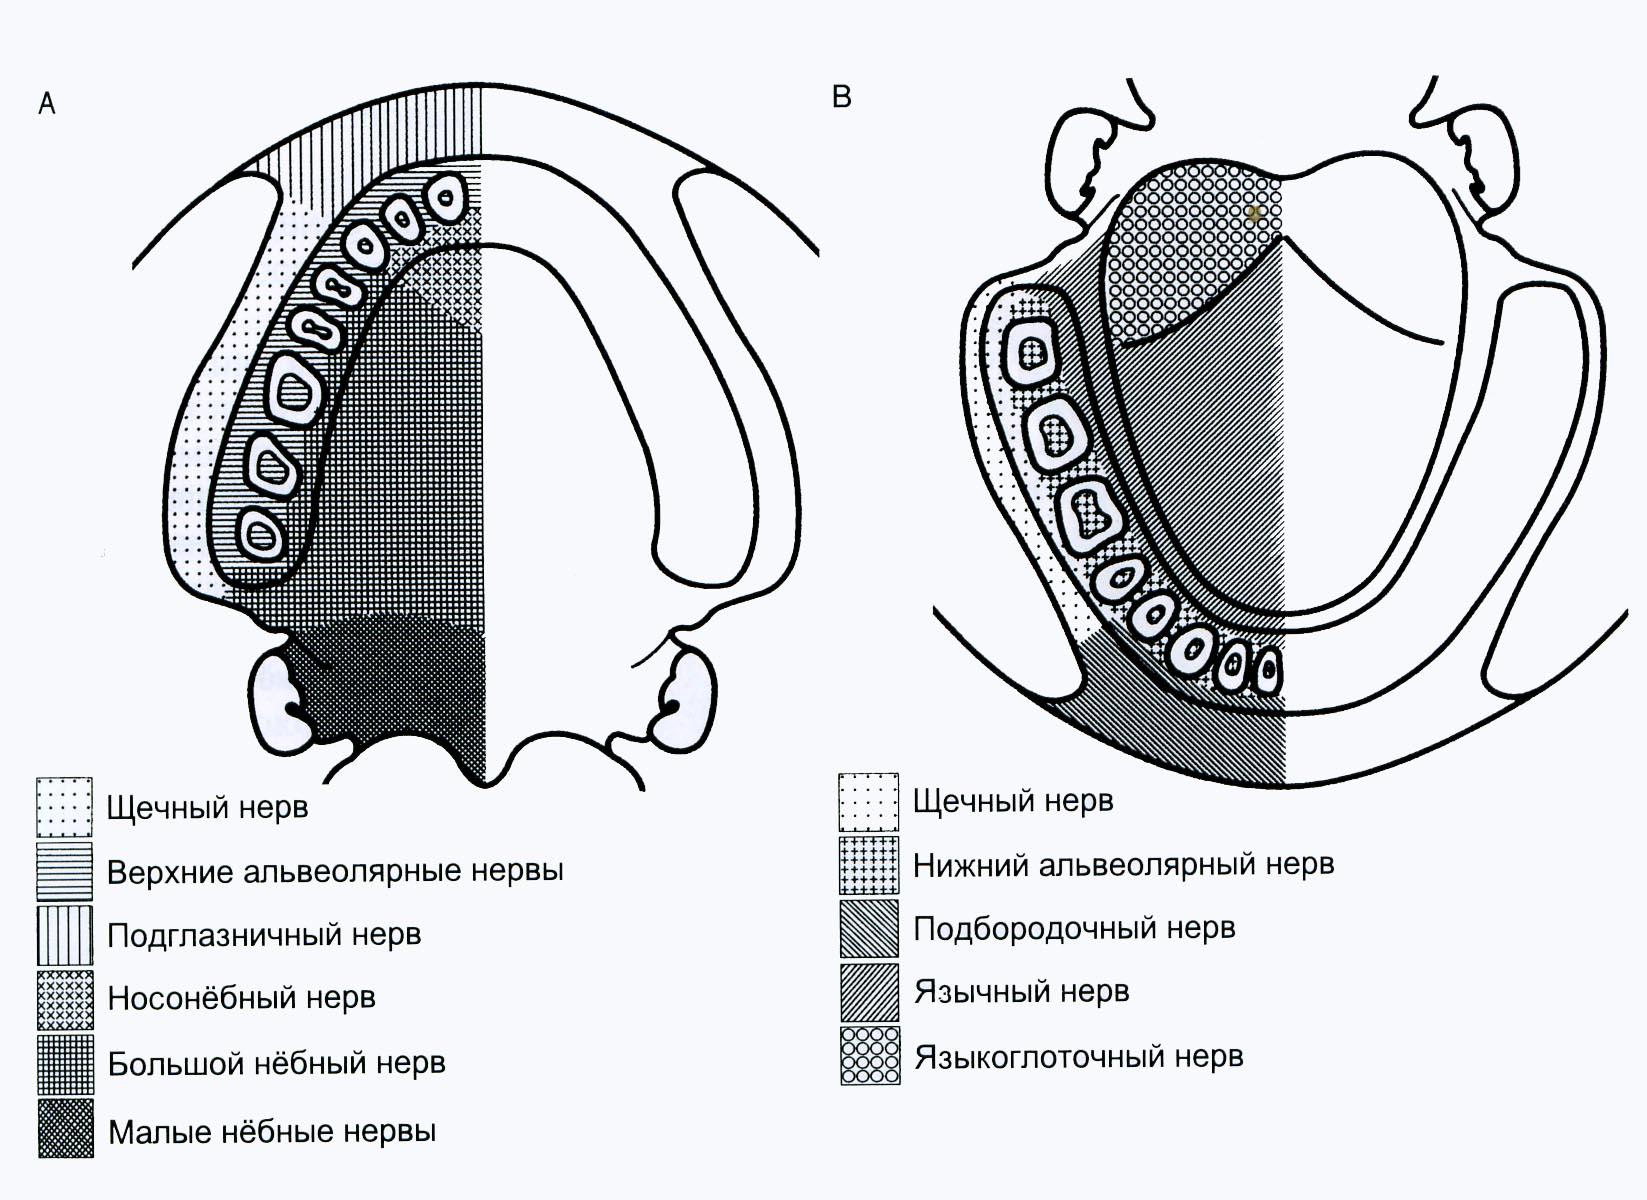 У кита альвеолярные легкие. Иннервация зубов и тканей челюстно-лицевой области. Иннервация зубов нижней челюсти схема. Иннервация зубов верхней и нижней челюсти. Иннервация ЧЛО схема.